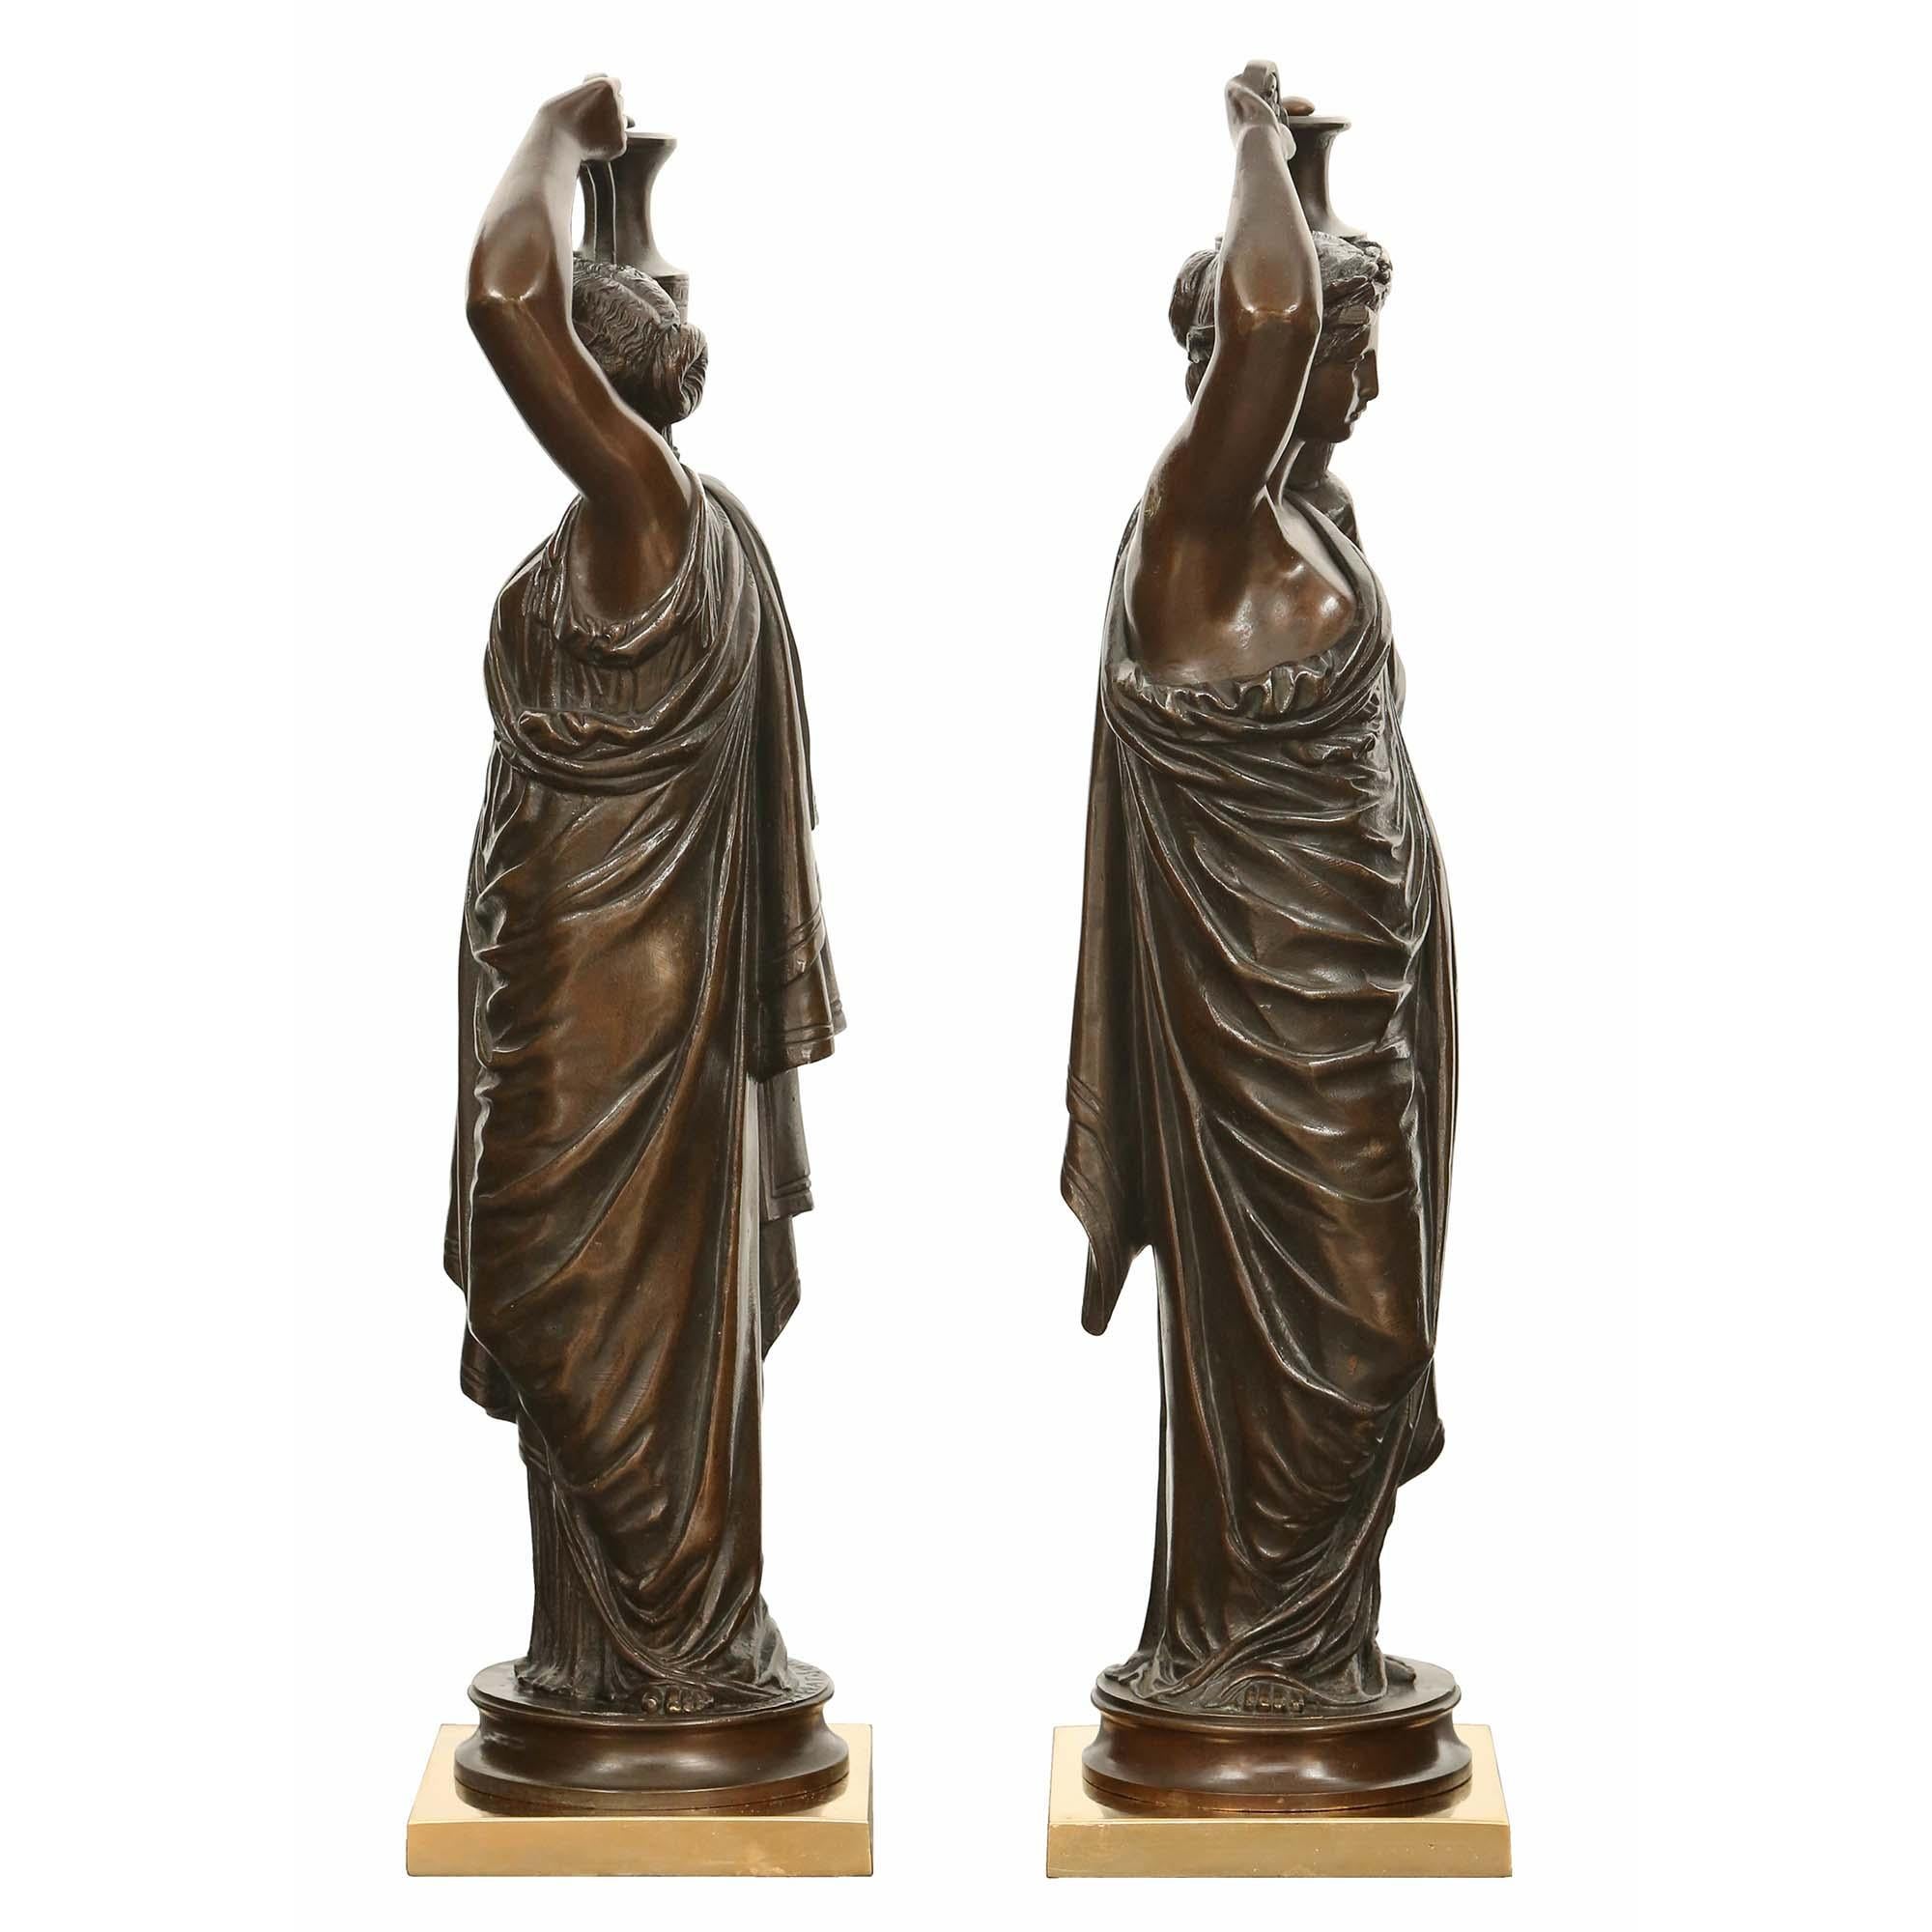 Ein charmantes Paar französischer patinierter Bronzestatuen aus dem 19. Jahrhundert, signiert H. Ferrat. Jede Bronze wird von einem quadratischen Sockel aus Ormolu und einem runden Sockel aus patinierter Bronze getragen. Die Bronzen stellen